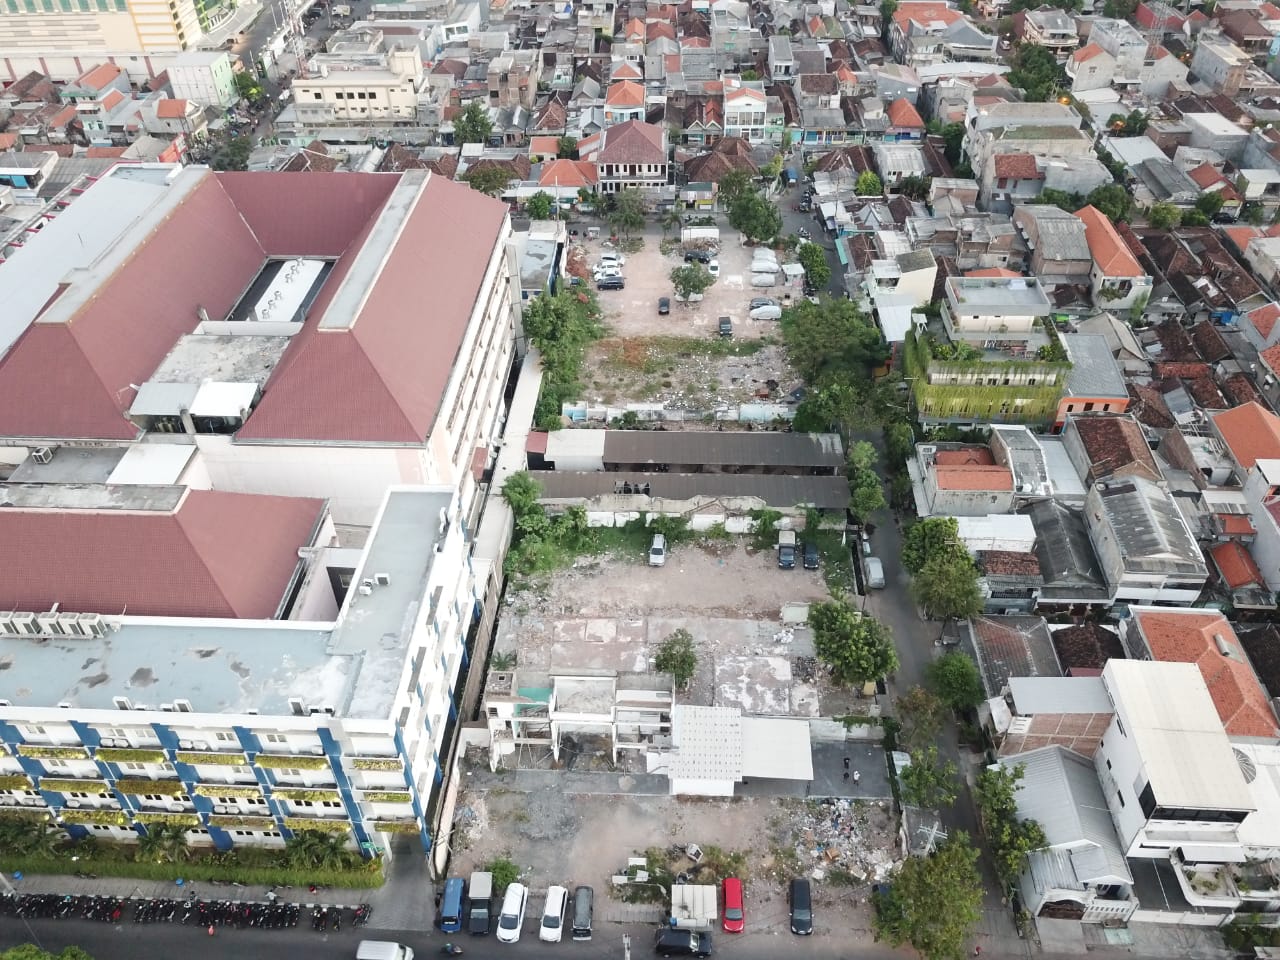 Rumah Sakit Soewandhi Surabaya. (Foto: dok. Humas pemkot Surabaya)